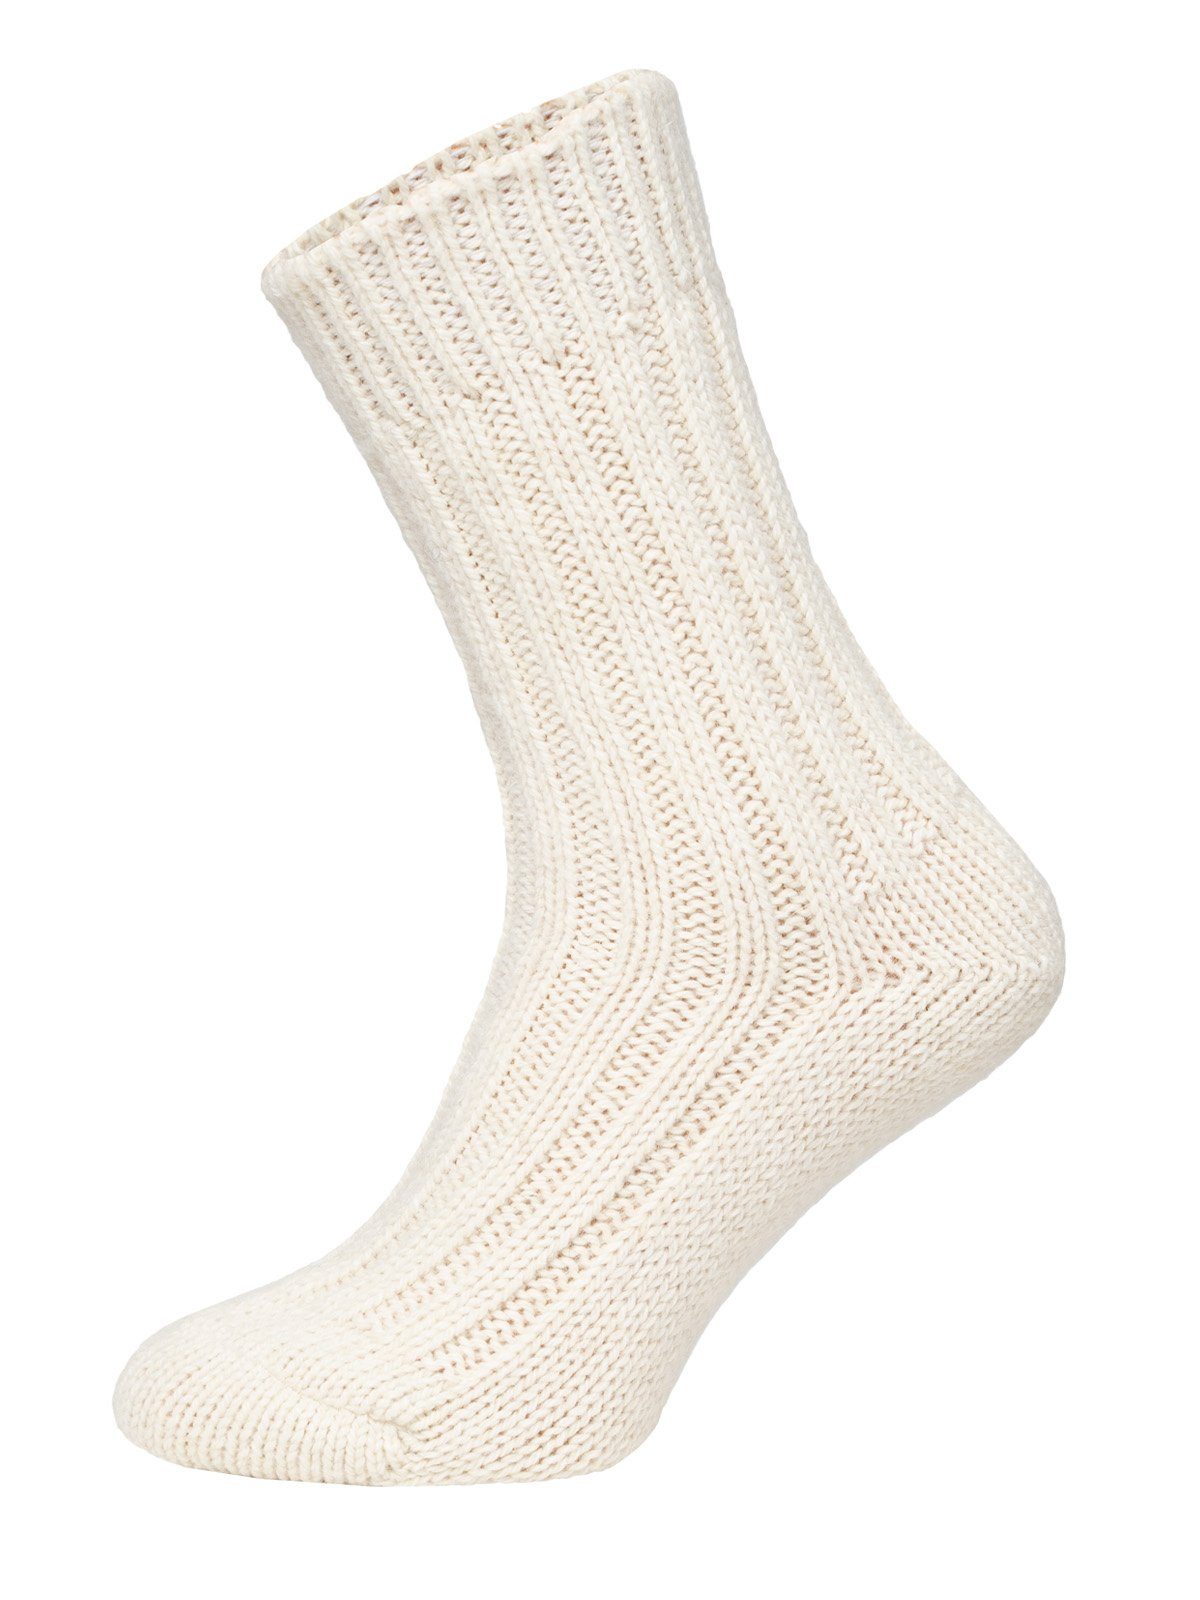 HomeOfSocks Socken Wollsocken mit Alpakawolle Strapazierfähige und warme Wollsocken mit 50% Wollanteil und Alpakawolle Creme/Taupe